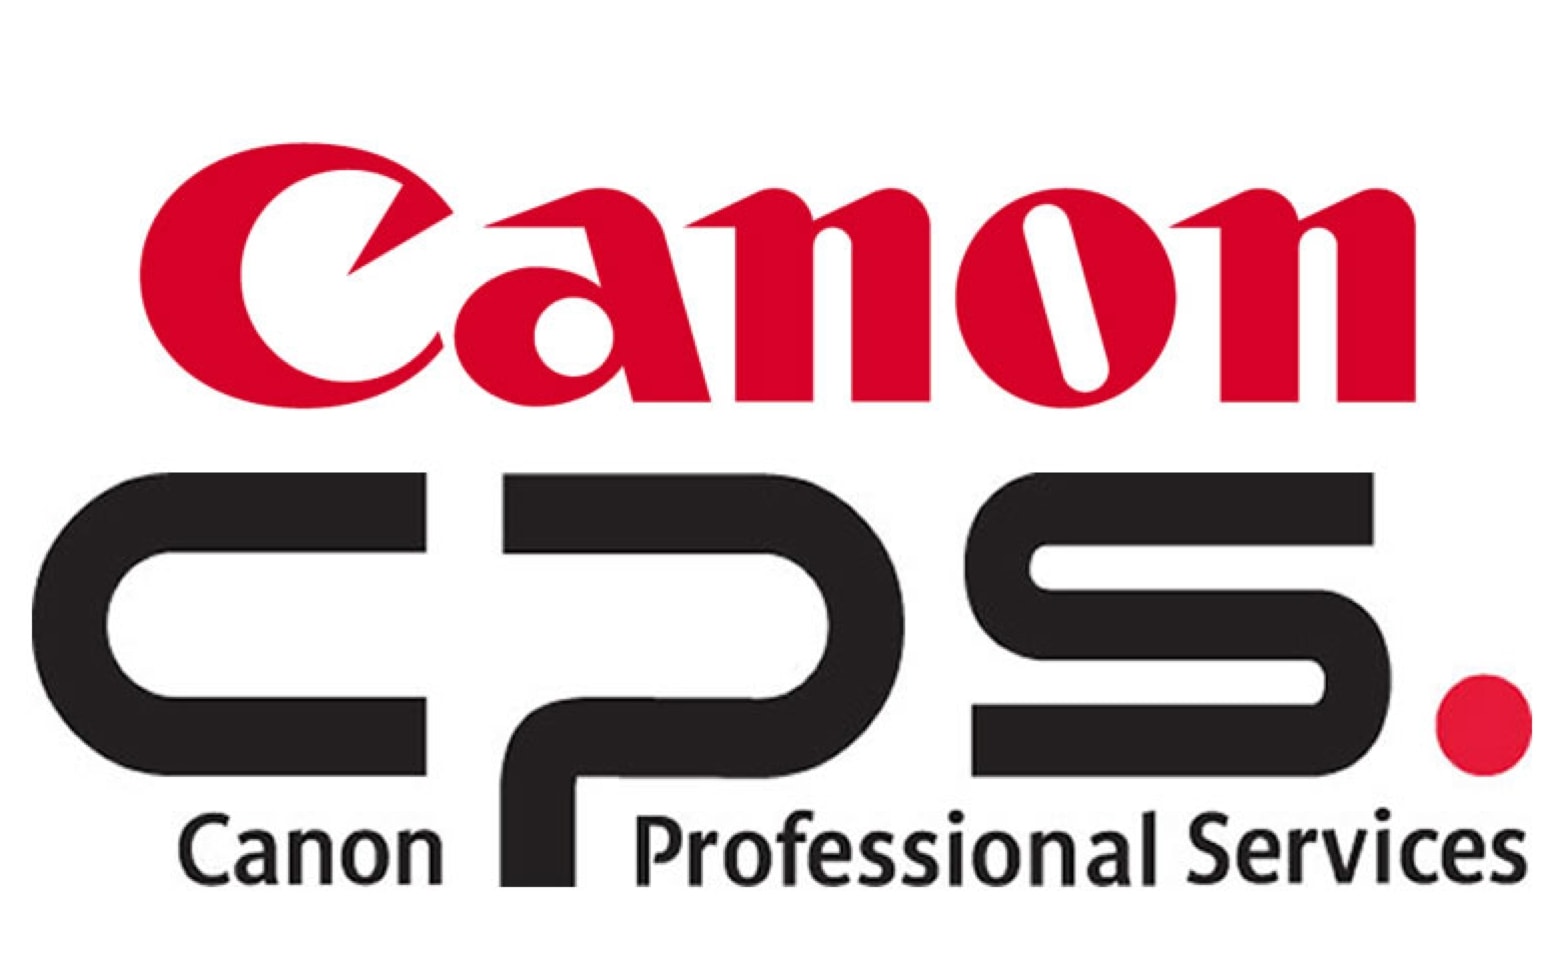 Canon camera care with Canon Professional Services